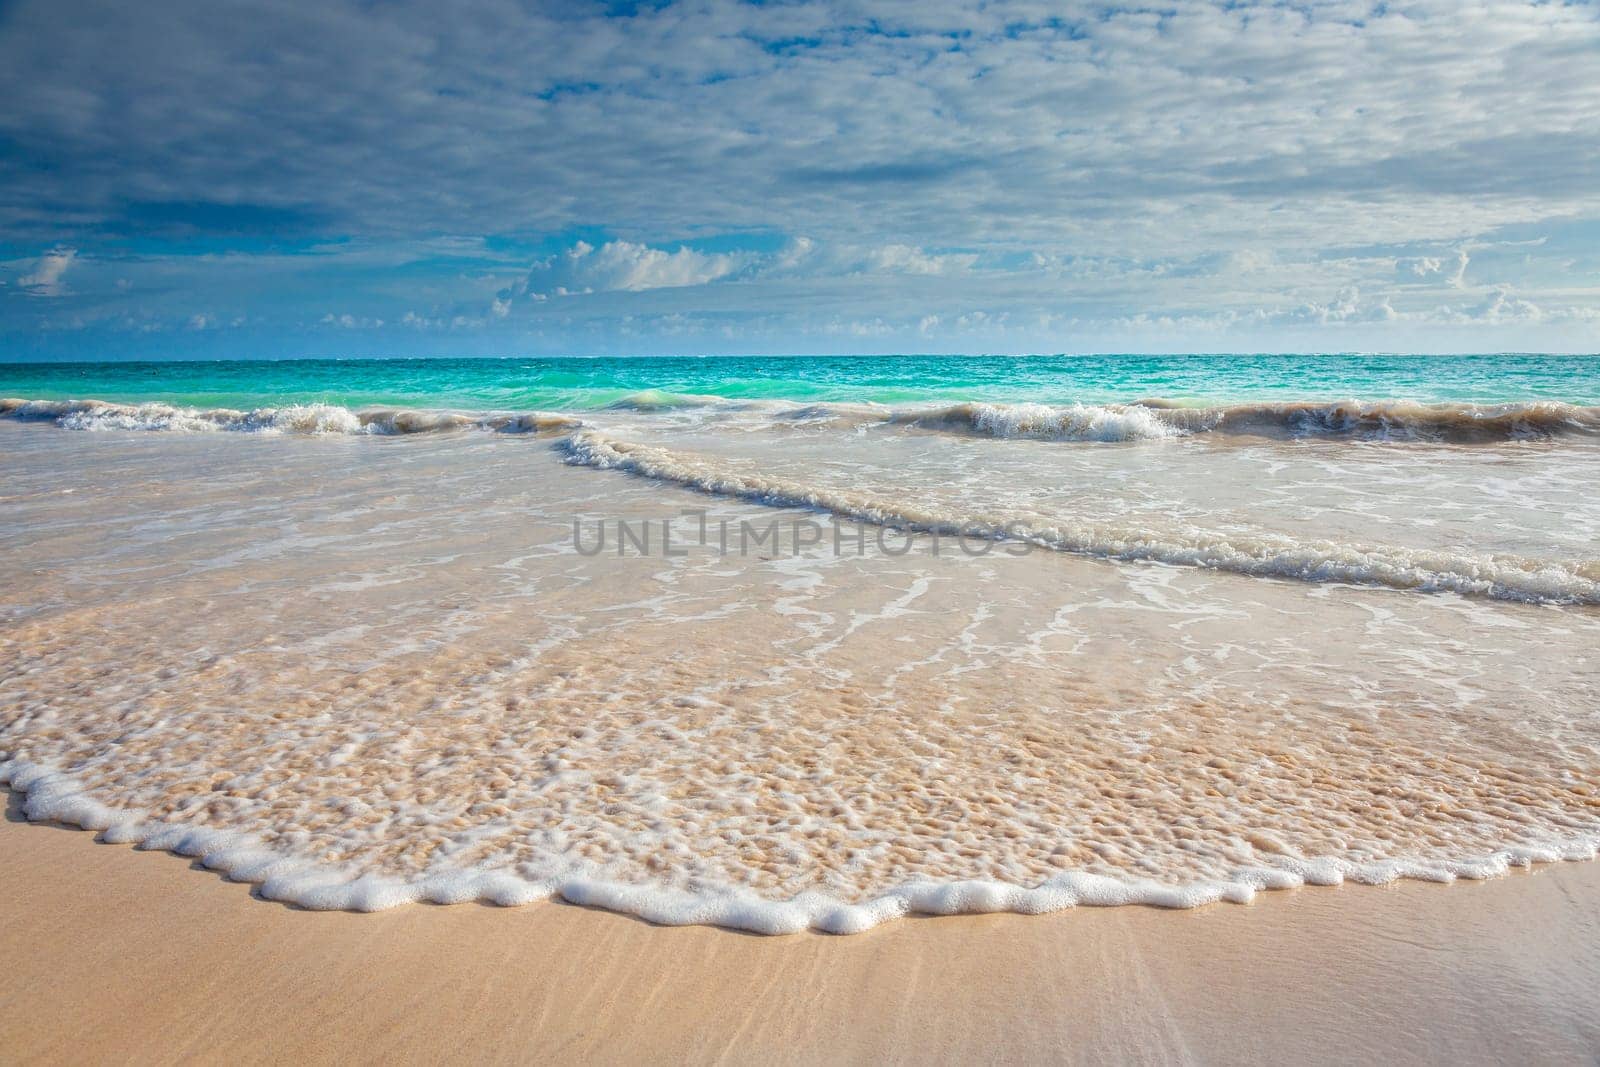 Arashi secluded beach on Aruba island, Caribbean sea by positivetravelart